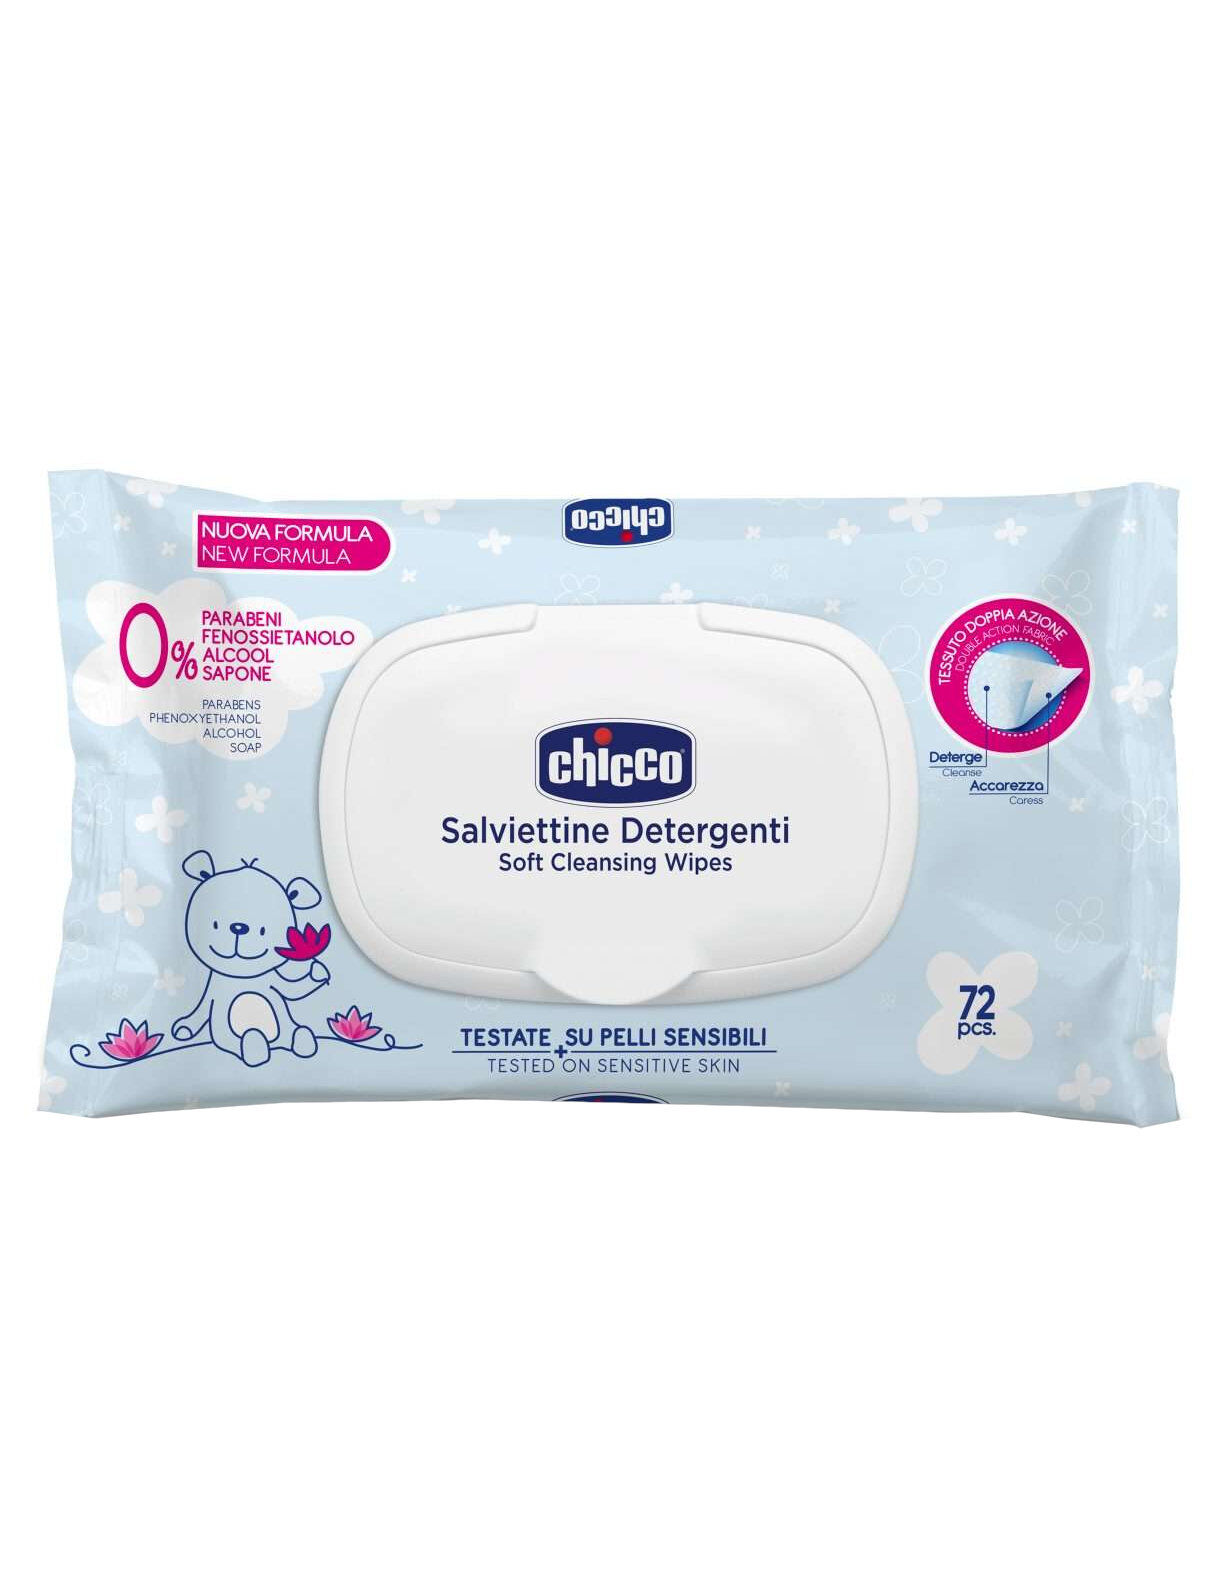 CHICCO Salviettine Detergenti 72 Salviettine